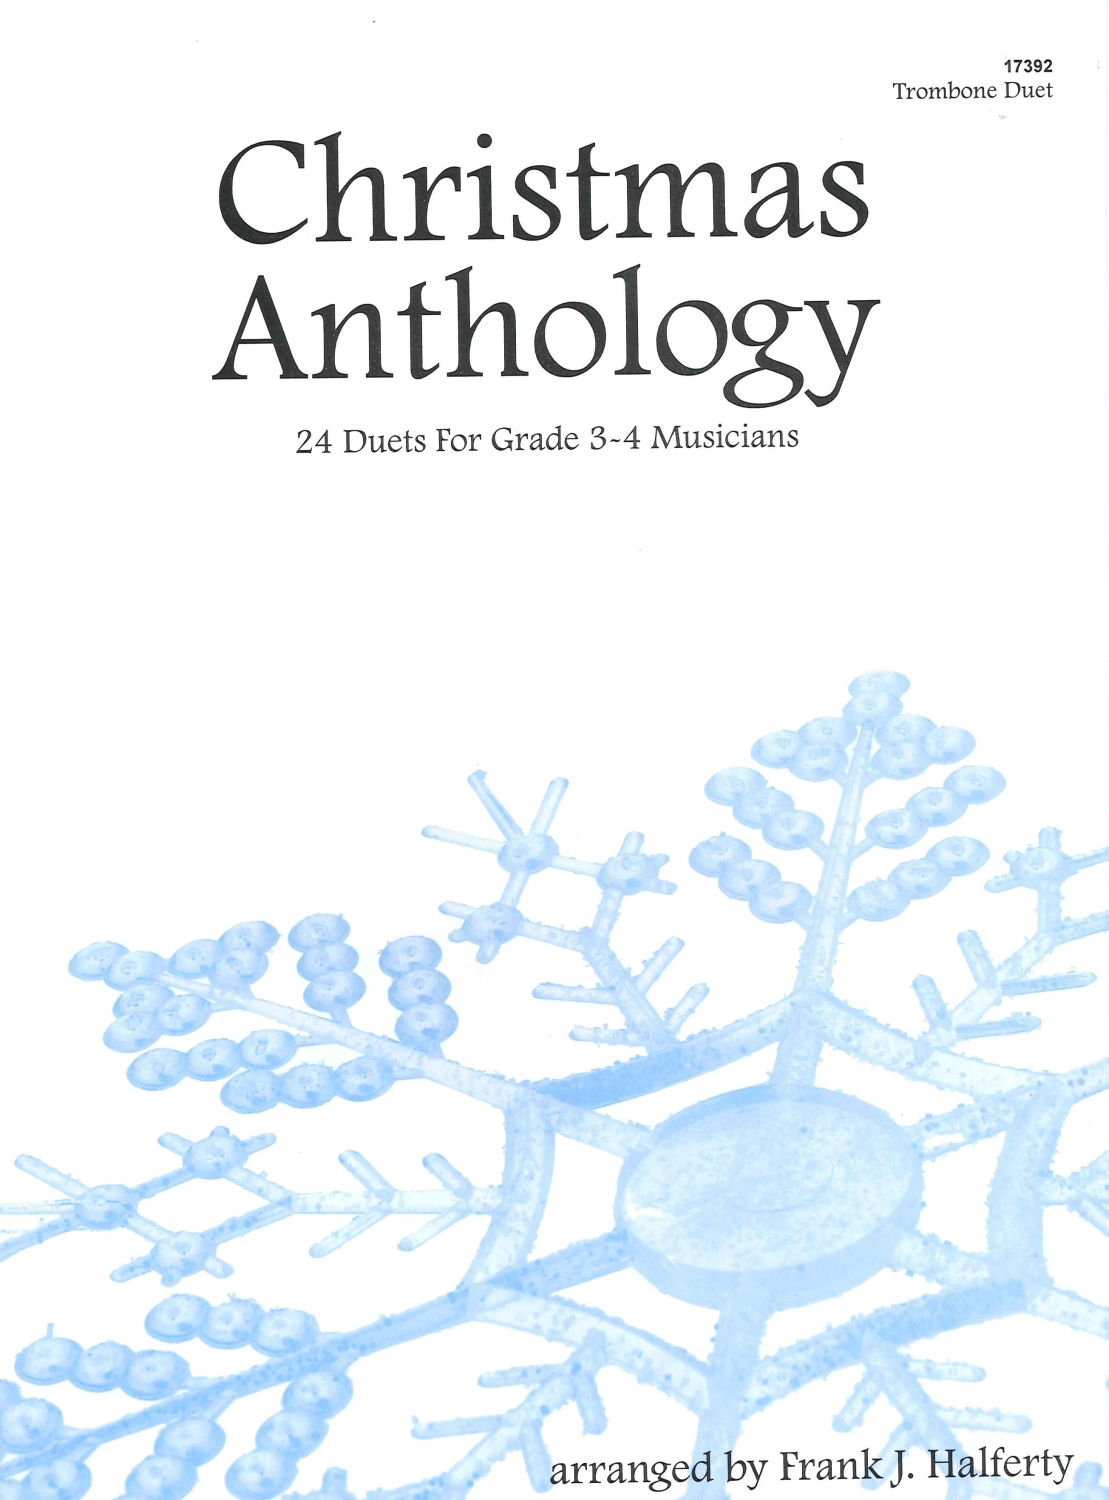 christmas-anthology-_0001.JPG